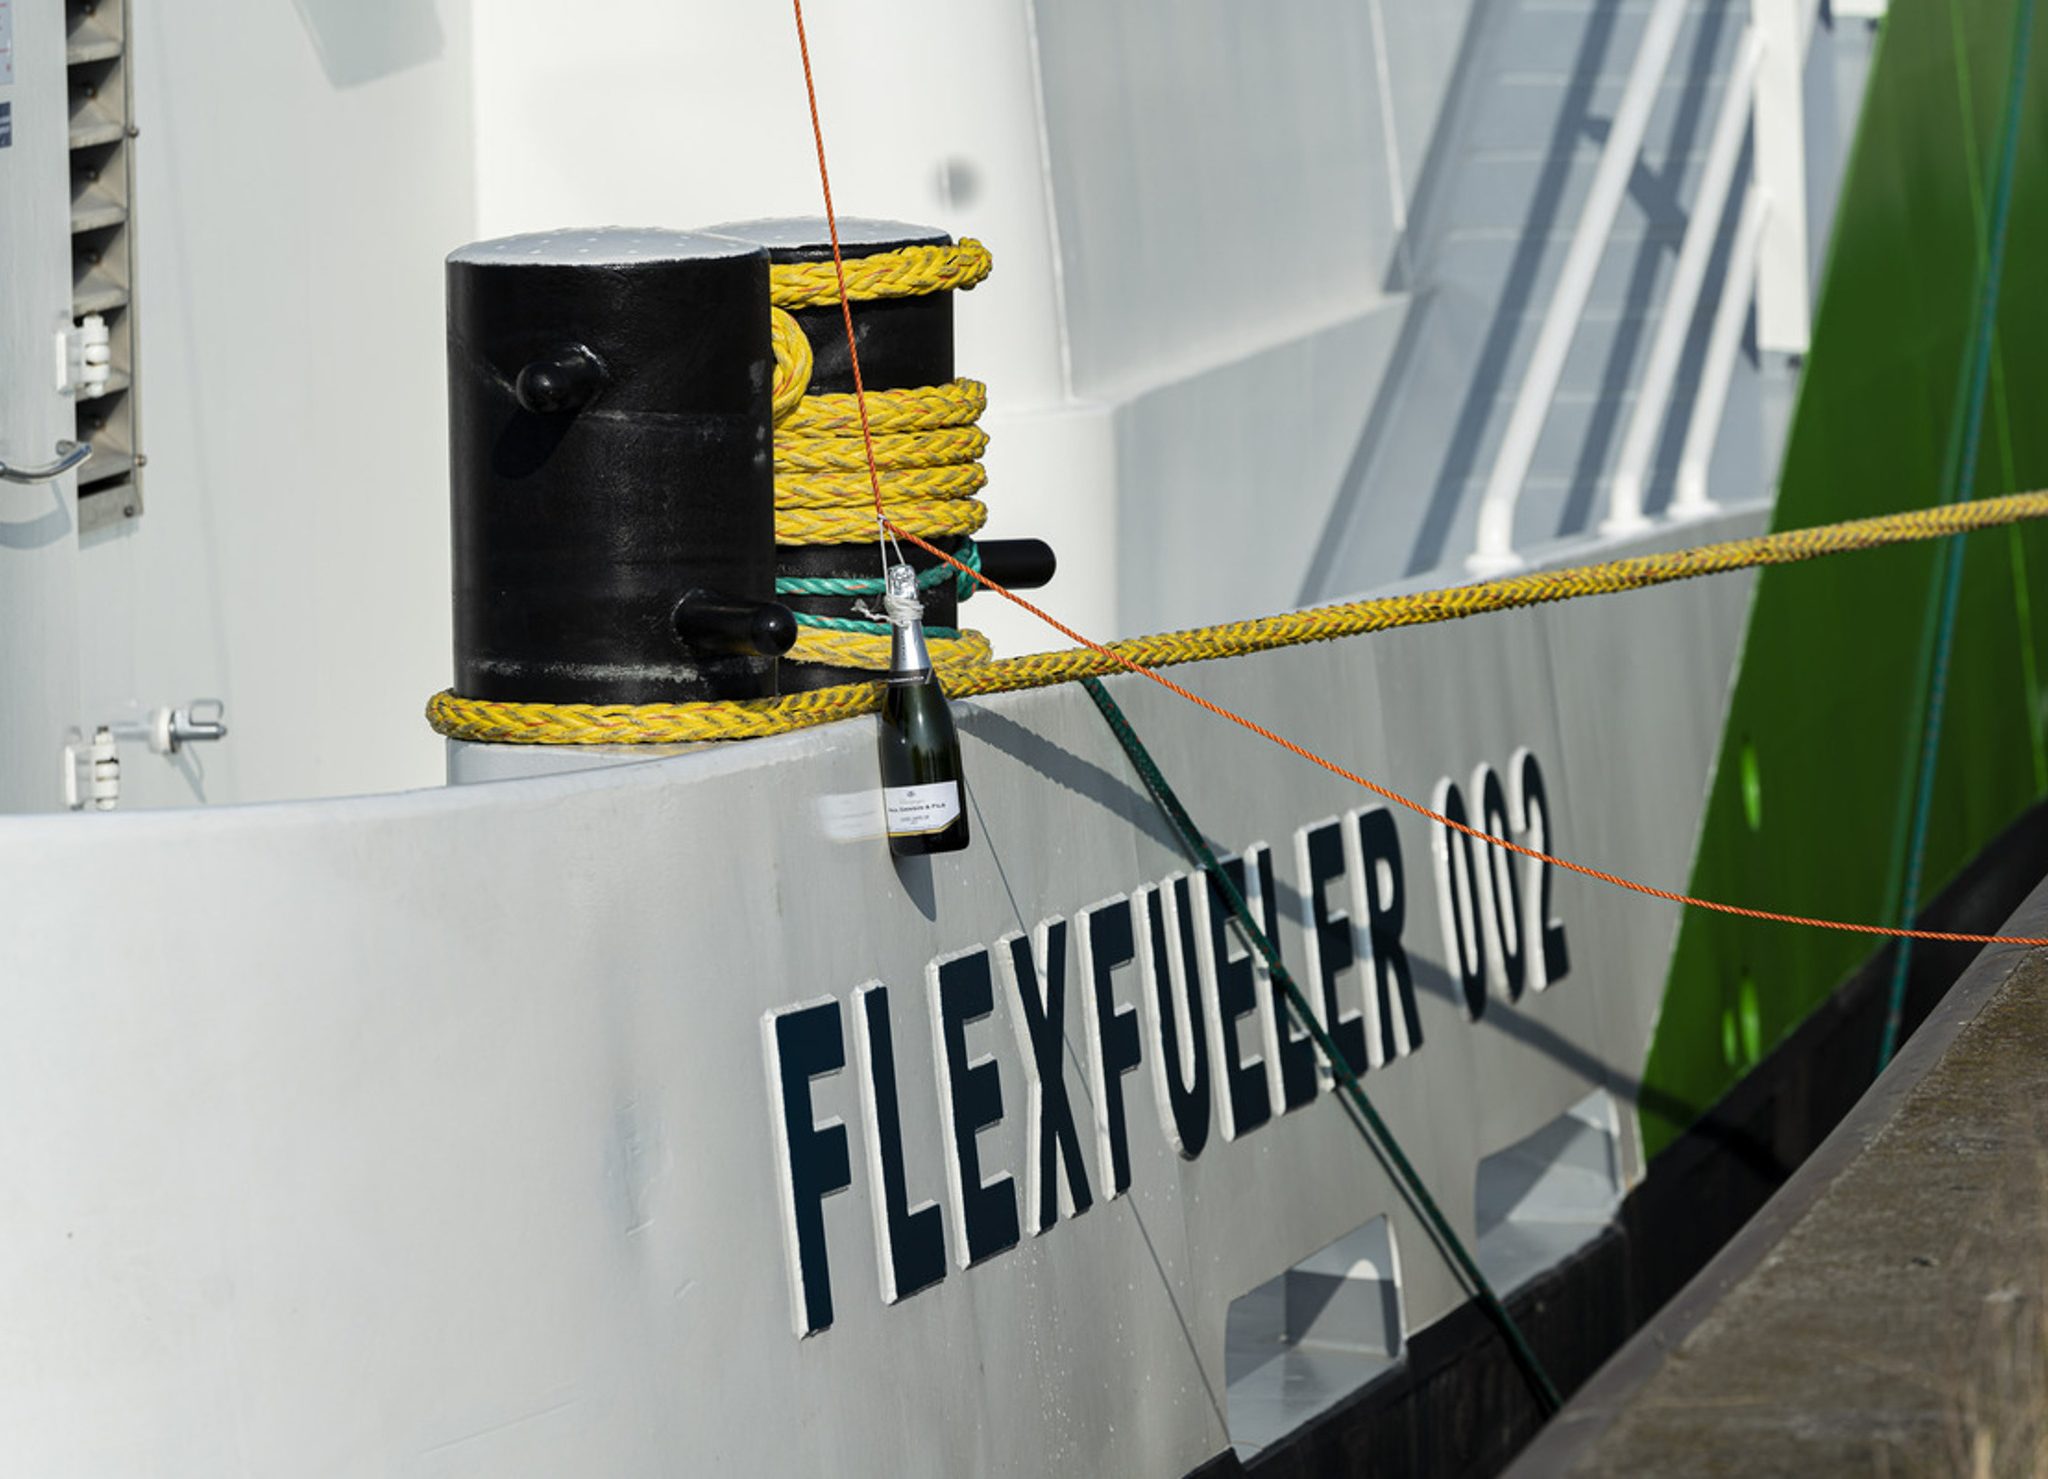 De FlexFueler 002 wordt gedoopt in de haven van Antwerpen (Foto Port of Antwerp)